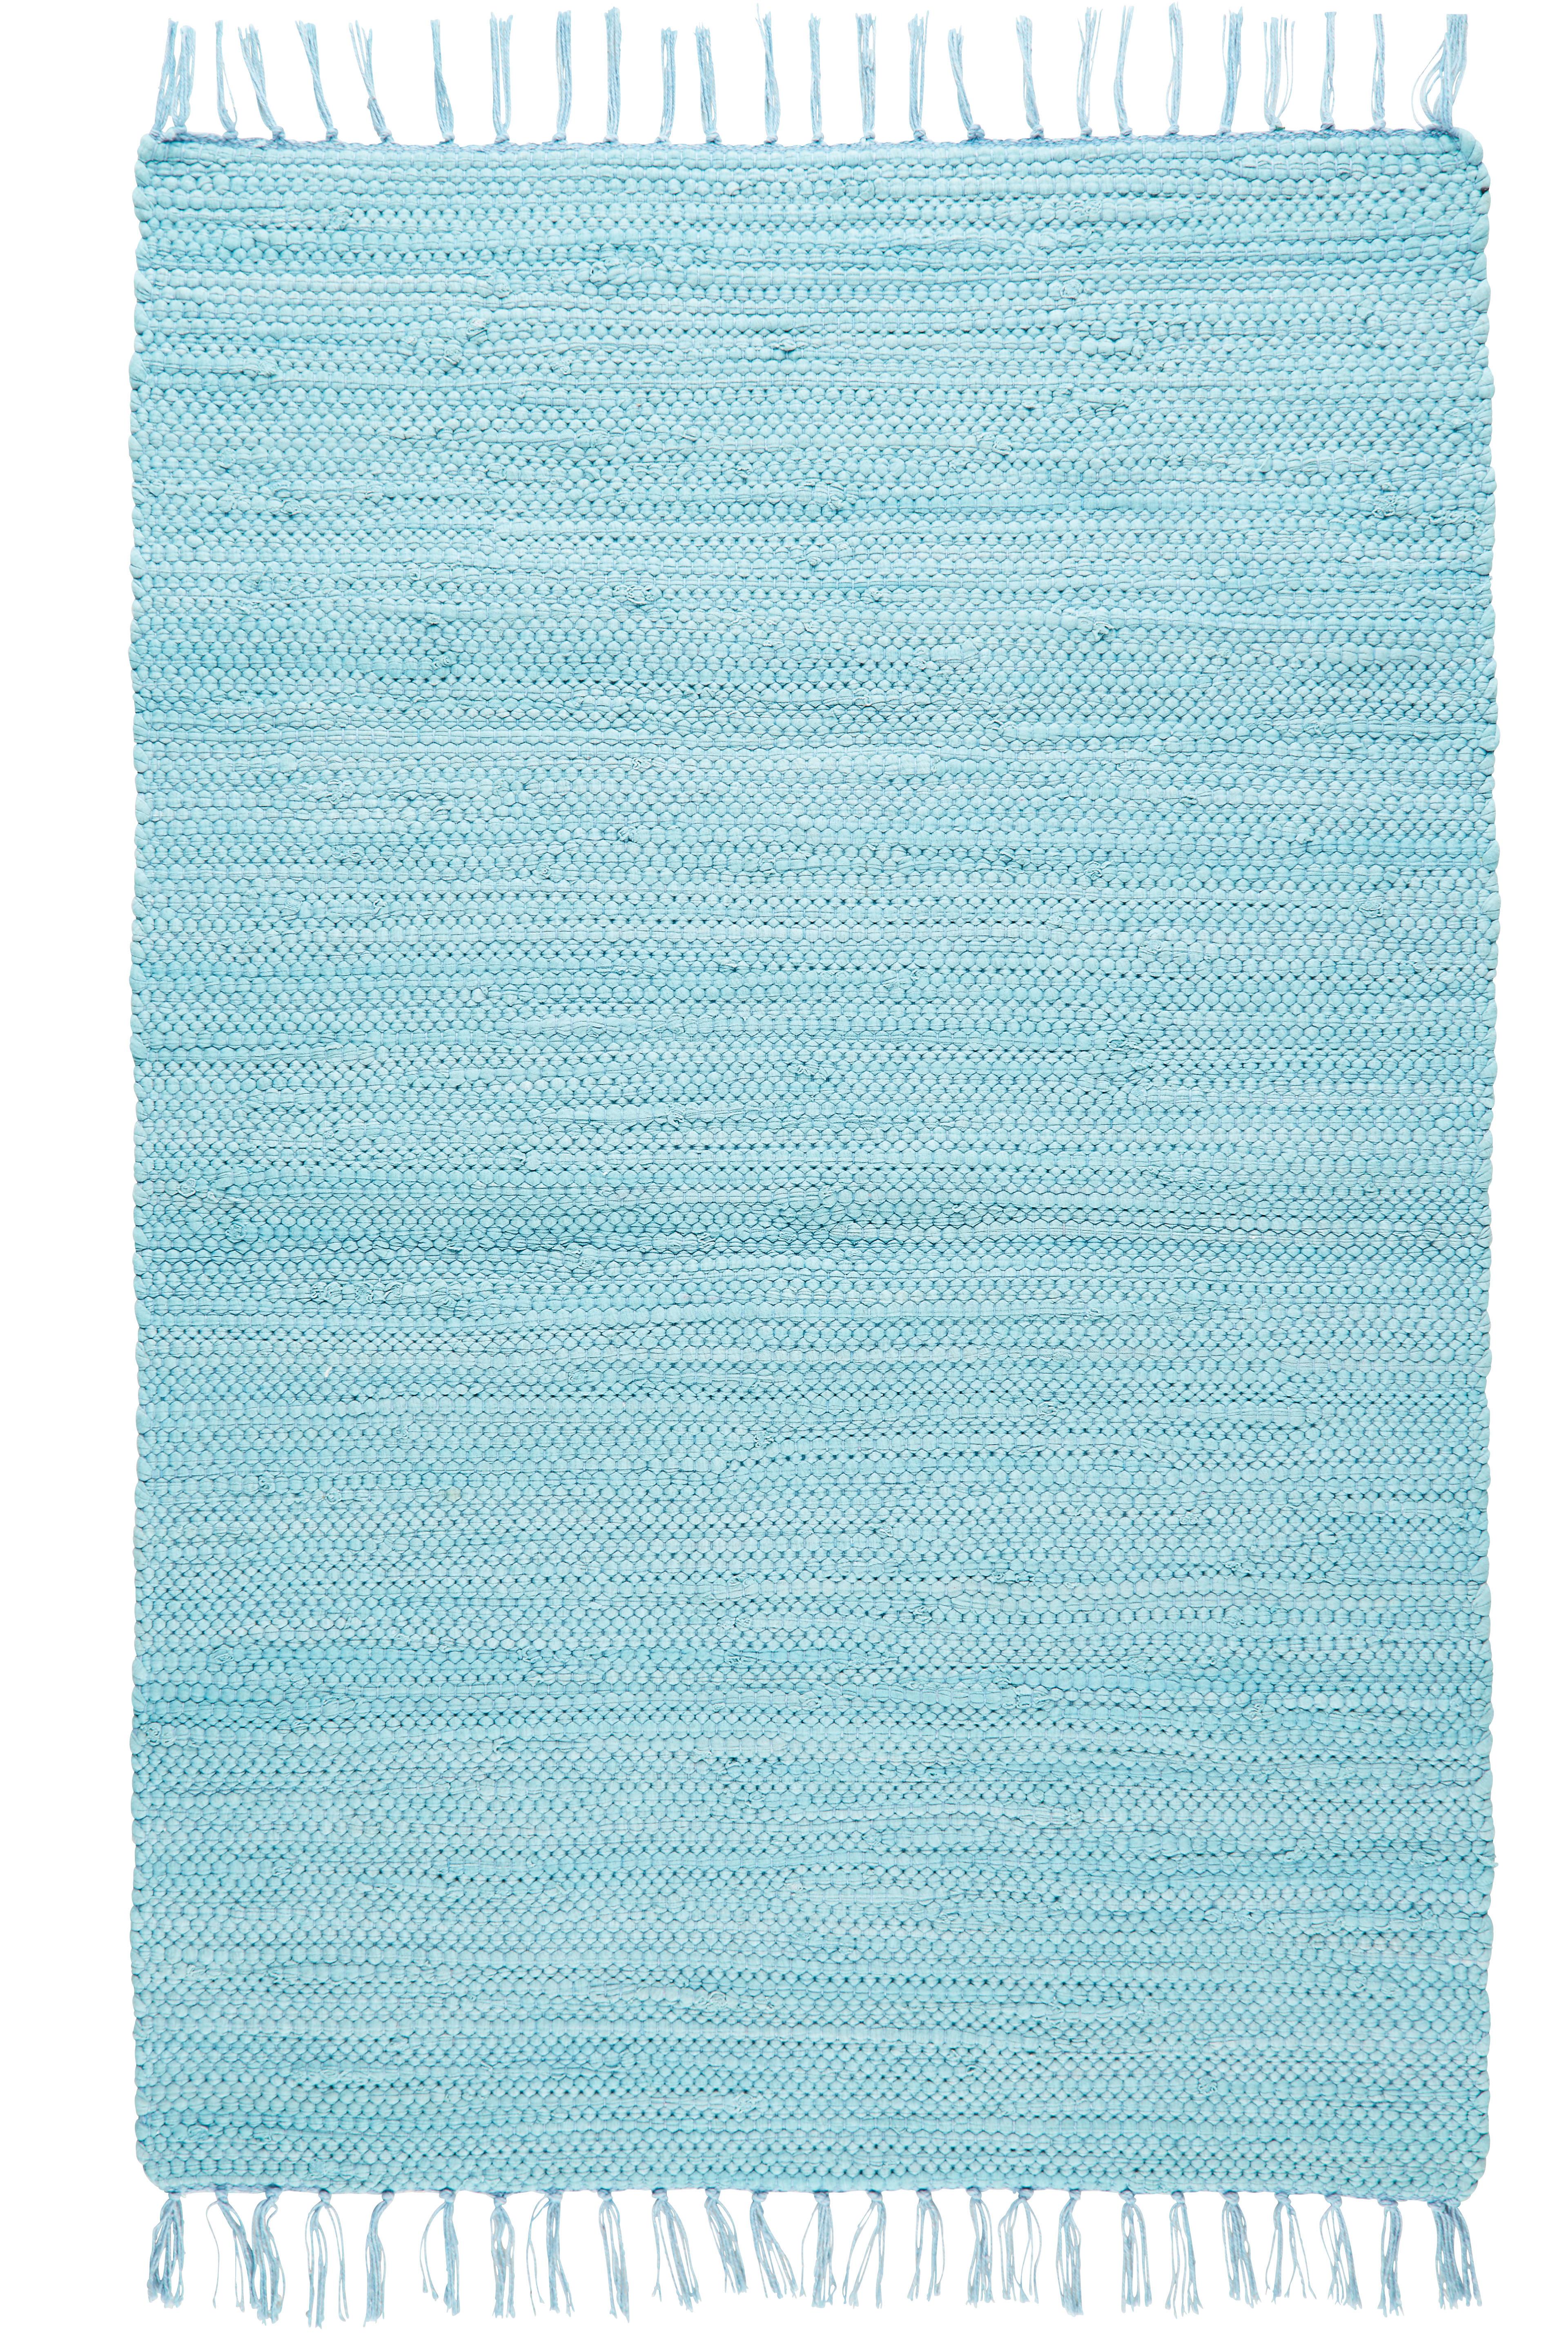 Tkaný Handričkový Koberec Julia 1, 60/90cm, Modrá - svetlomodrá, Romantický / Vidiecky, textil (60/90cm) - Modern Living